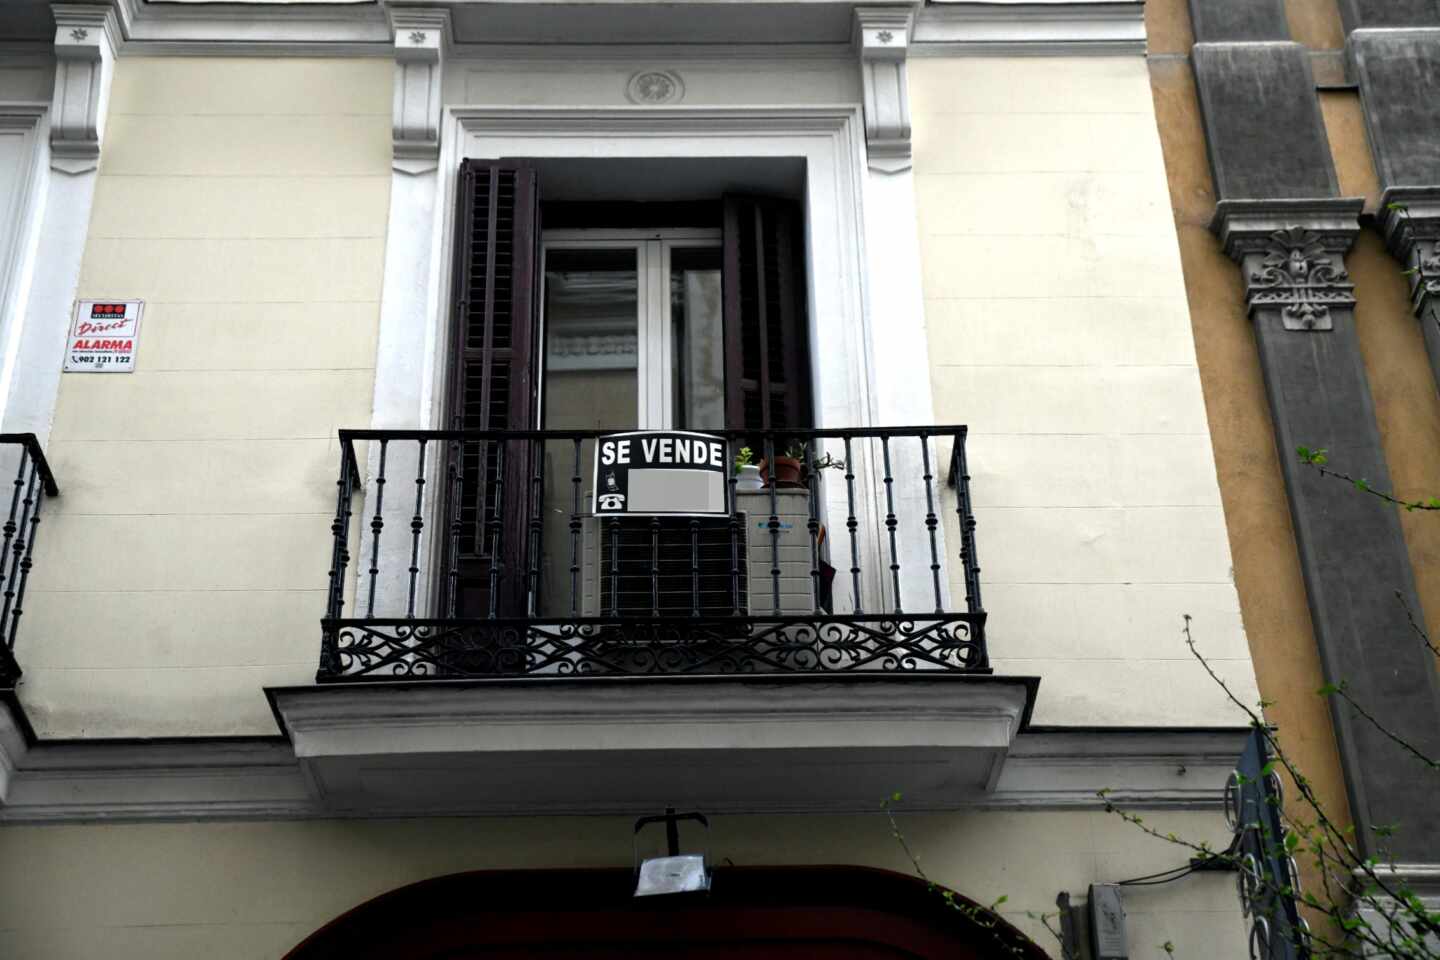 Un cartel de 'Se vende' cuelga del balcón de una vivienda.